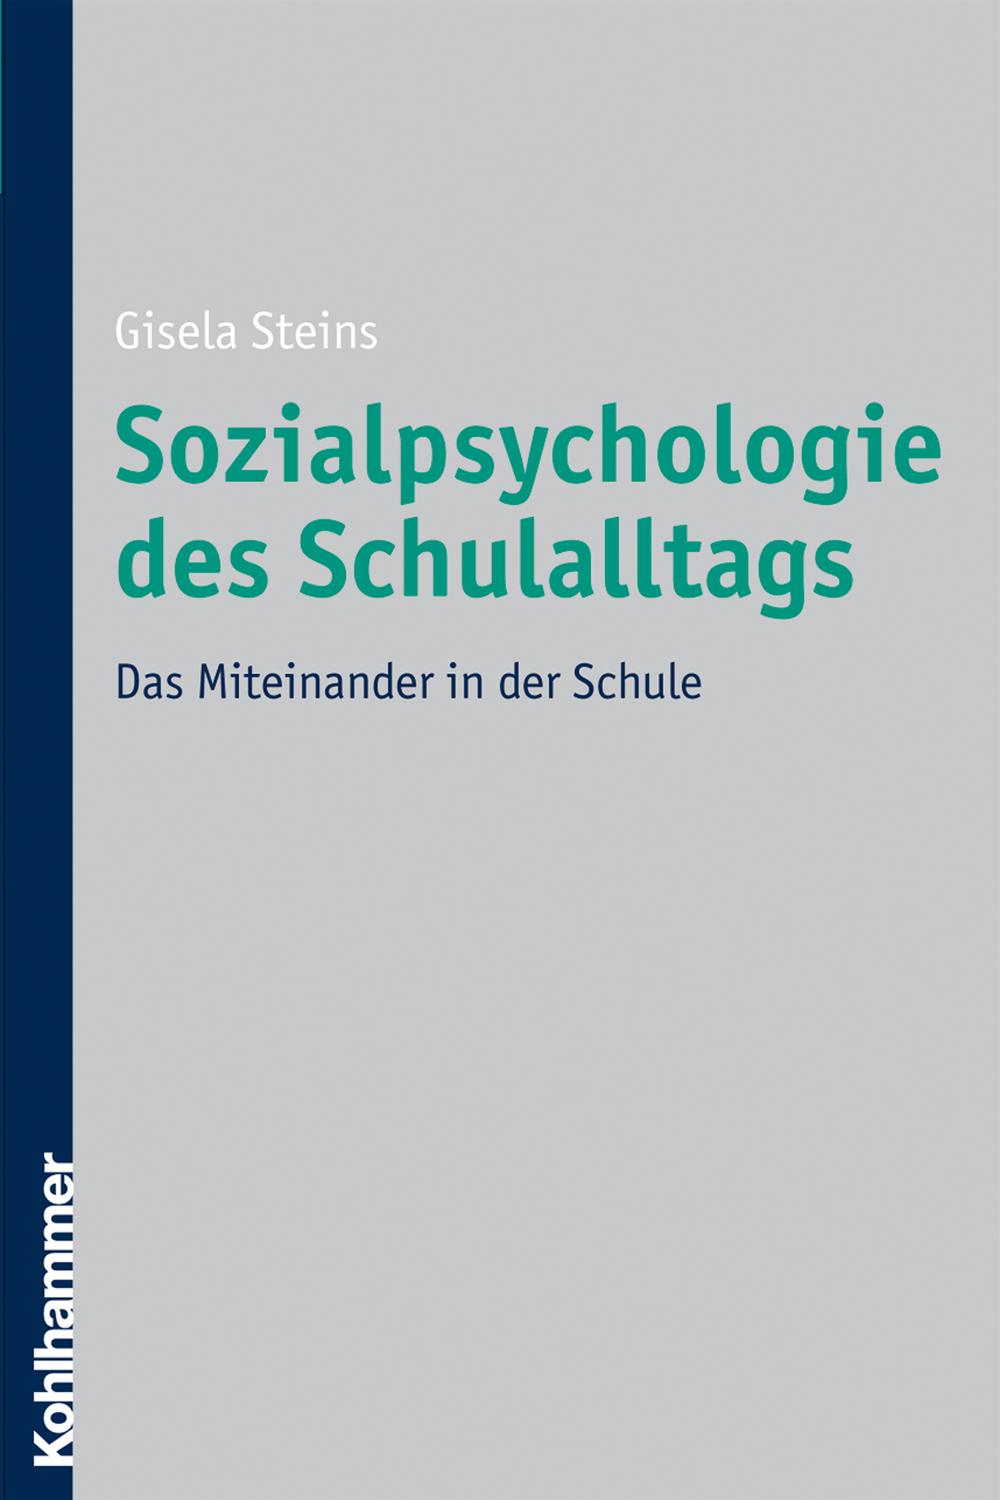 Sozialpsychologie des Schulalltags - Gisela Steins,,